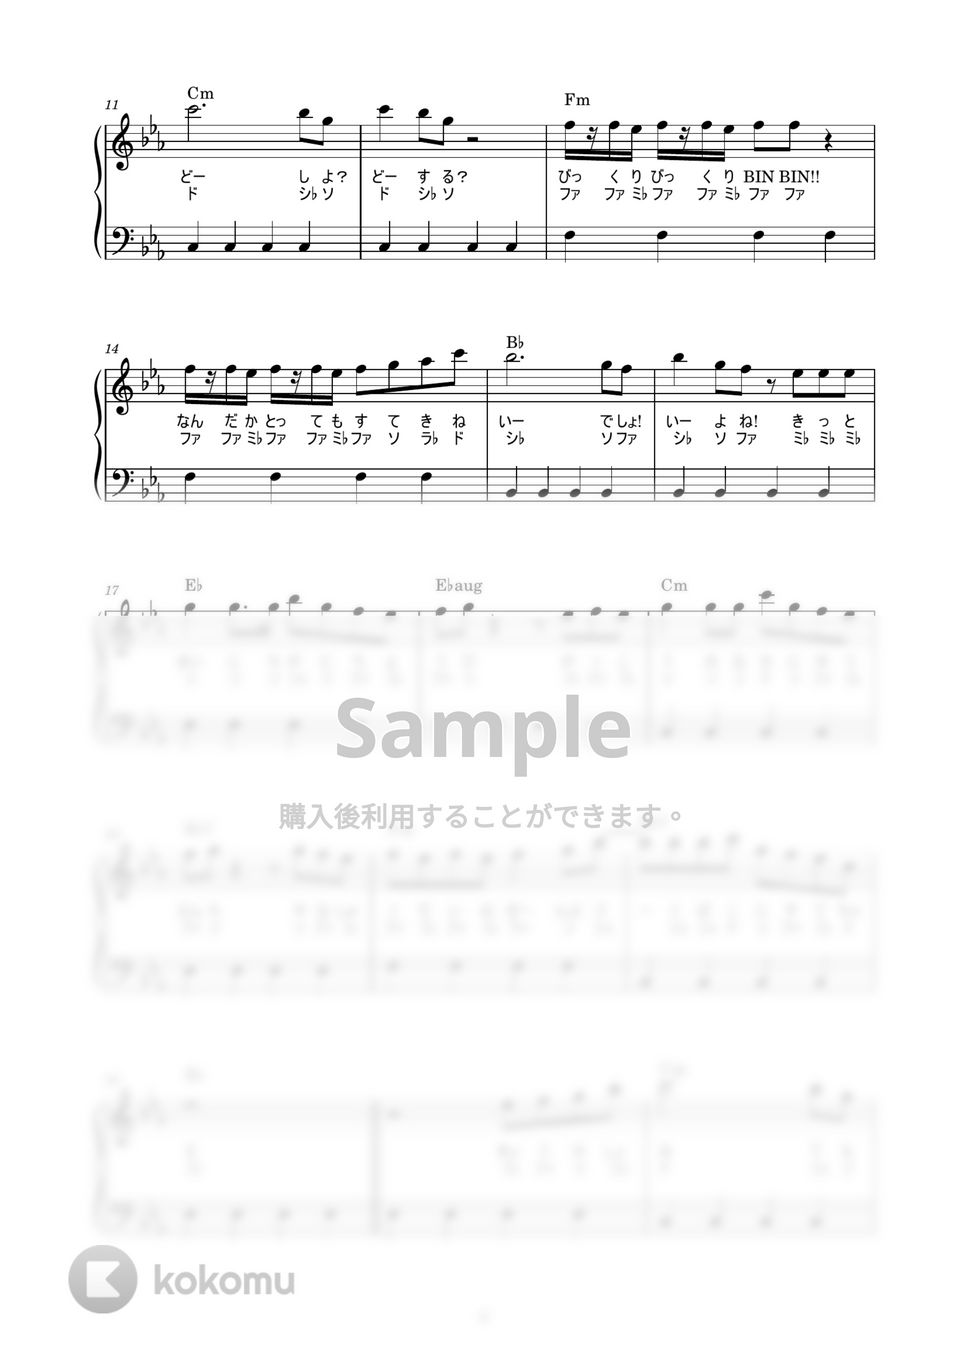 MAHO堂 - おジャ魔女カーニバル!! (かんたん / 歌詞付き / ドレミ付き / 初心者) by piano.tokyo